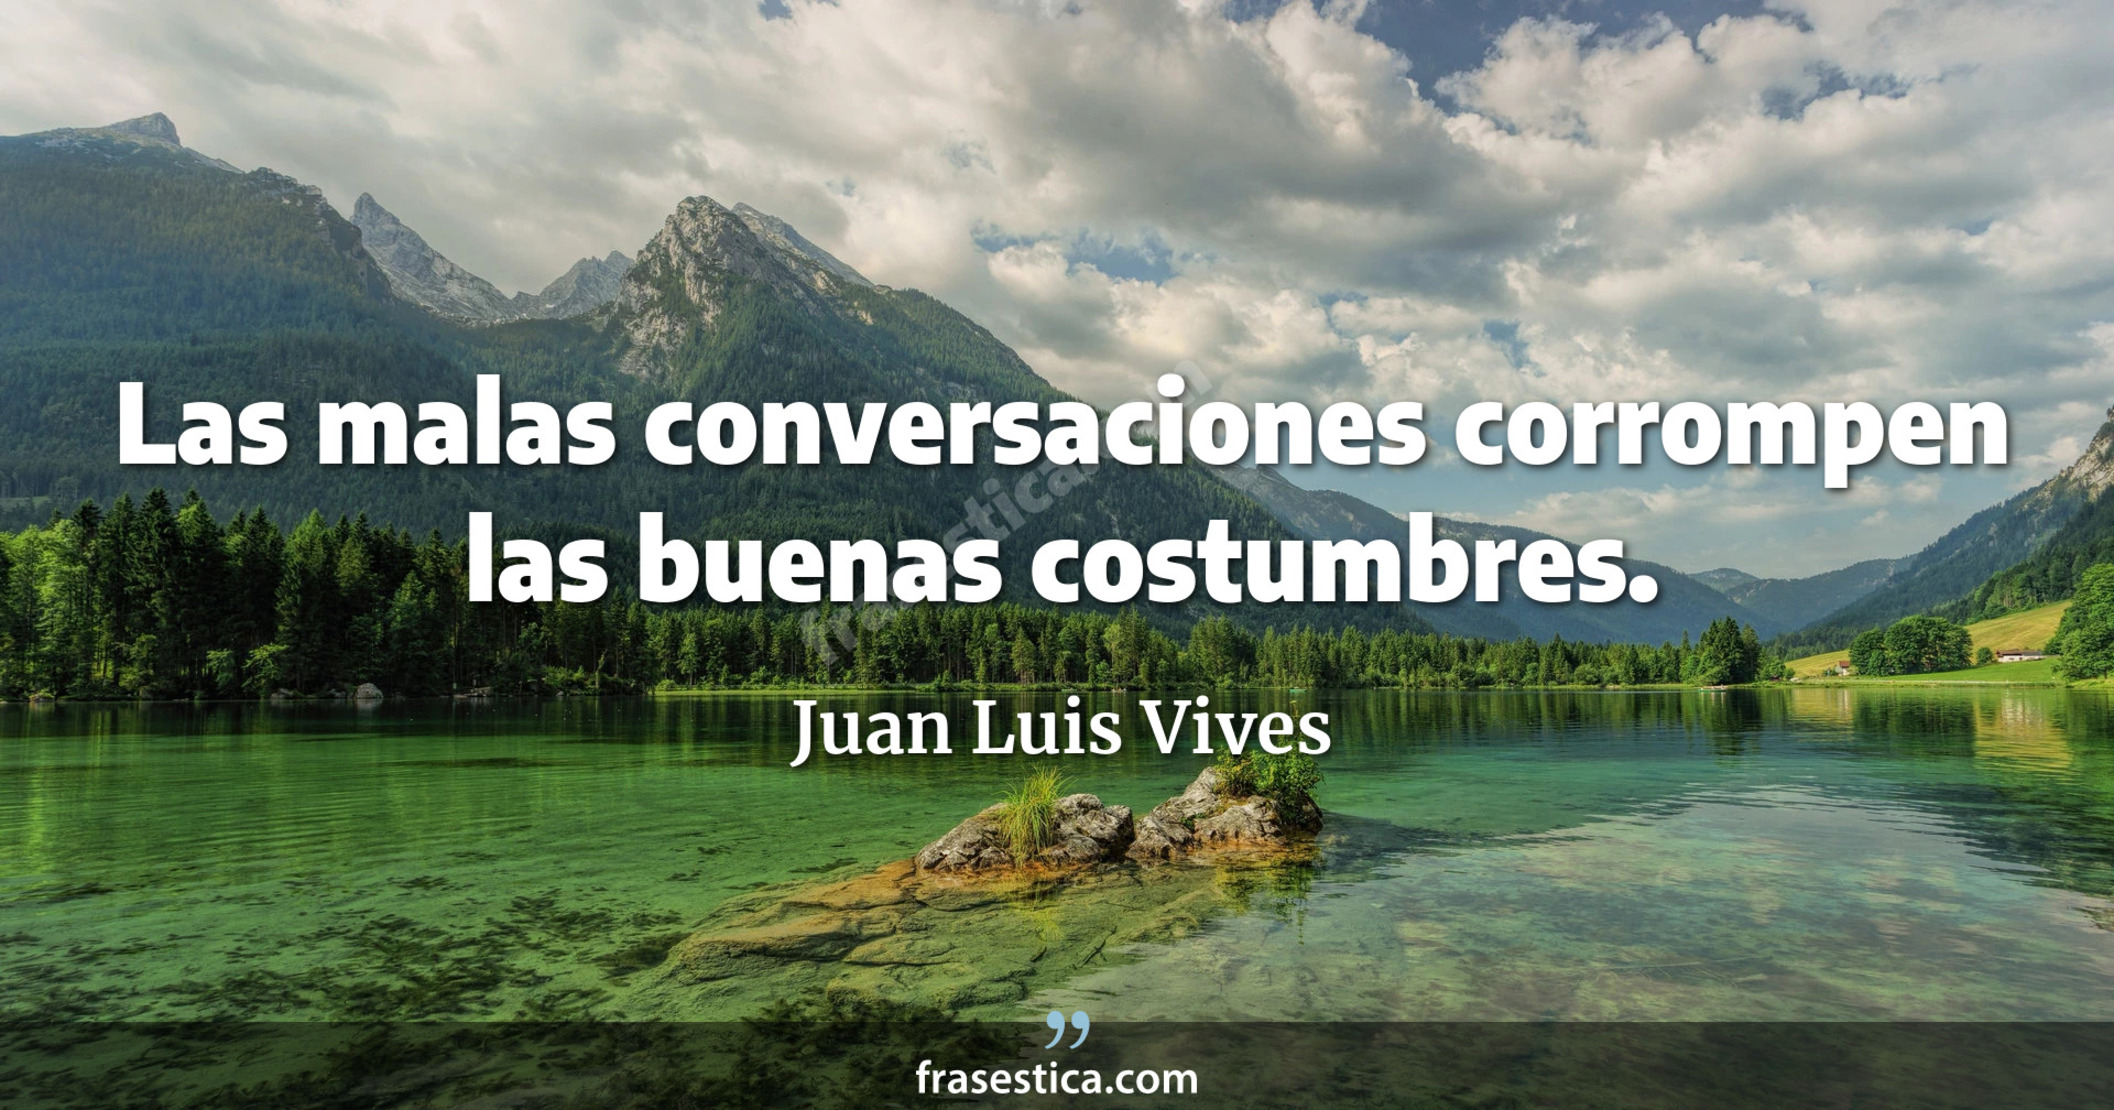 Las malas conversaciones corrompen las buenas costumbres. - Juan Luis Vives